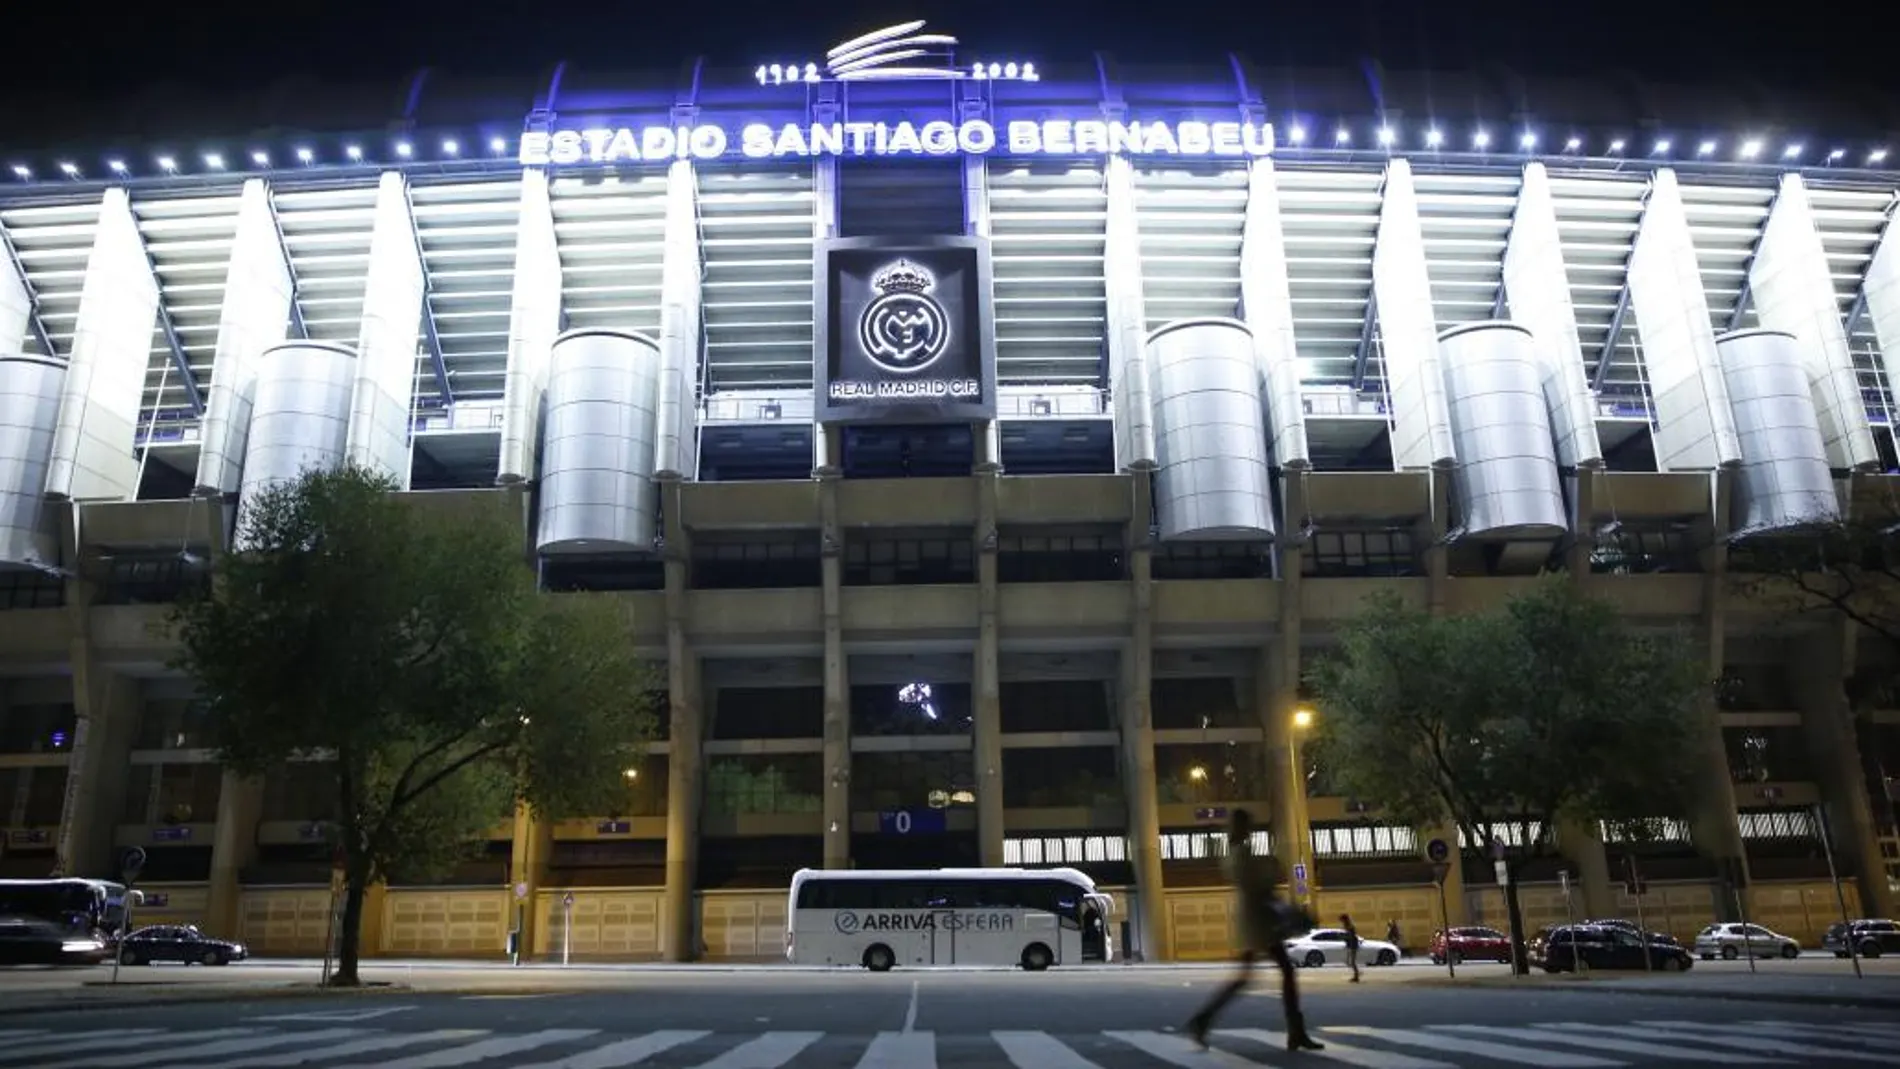 Imagen de archivo del estadio Santiago Bernabéu